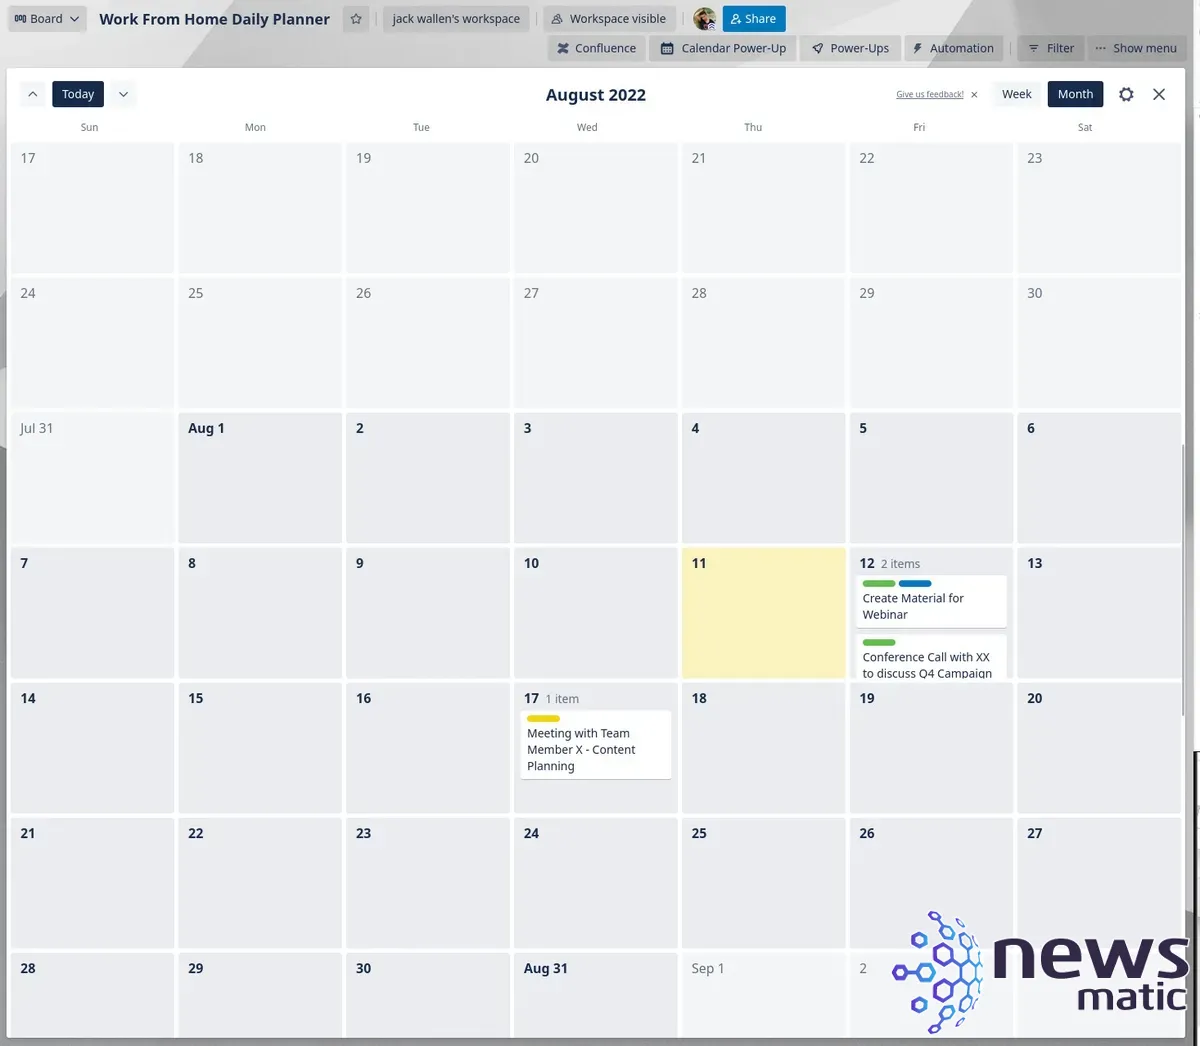 Cómo utilizar Trello como planificador diario para trabajar desde casa - Software | Imagen 7 Newsmatic